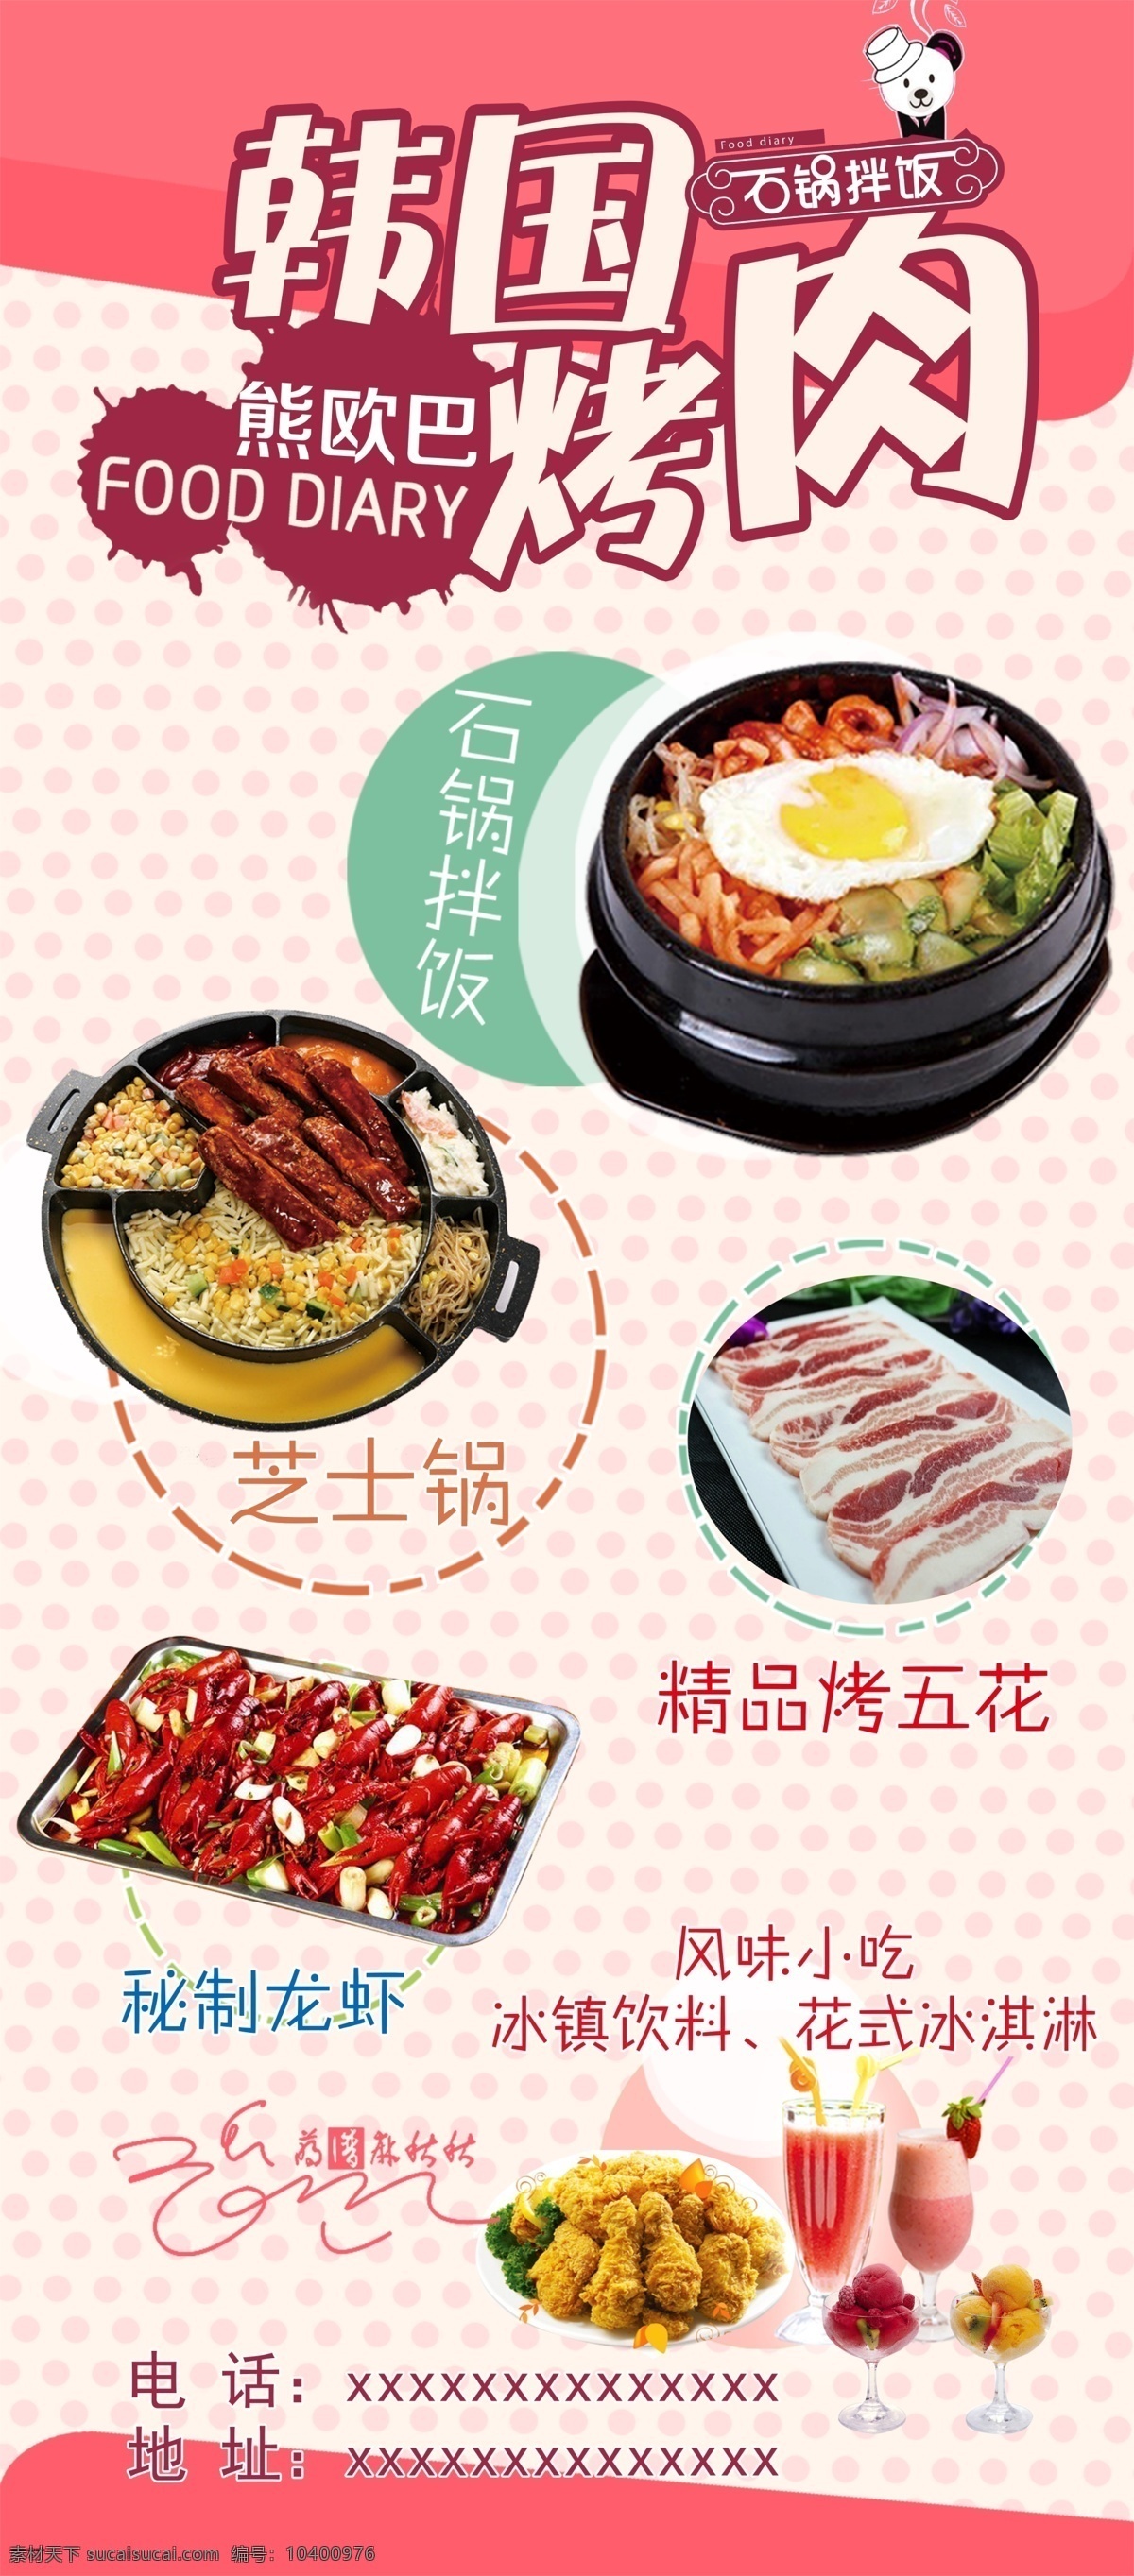 熊欧巴烤肉 韩国烤肉 韩文 会员 烤肉 优惠活动海报 展架 韩国美食 石锅拌饭 熊欧巴 黑色